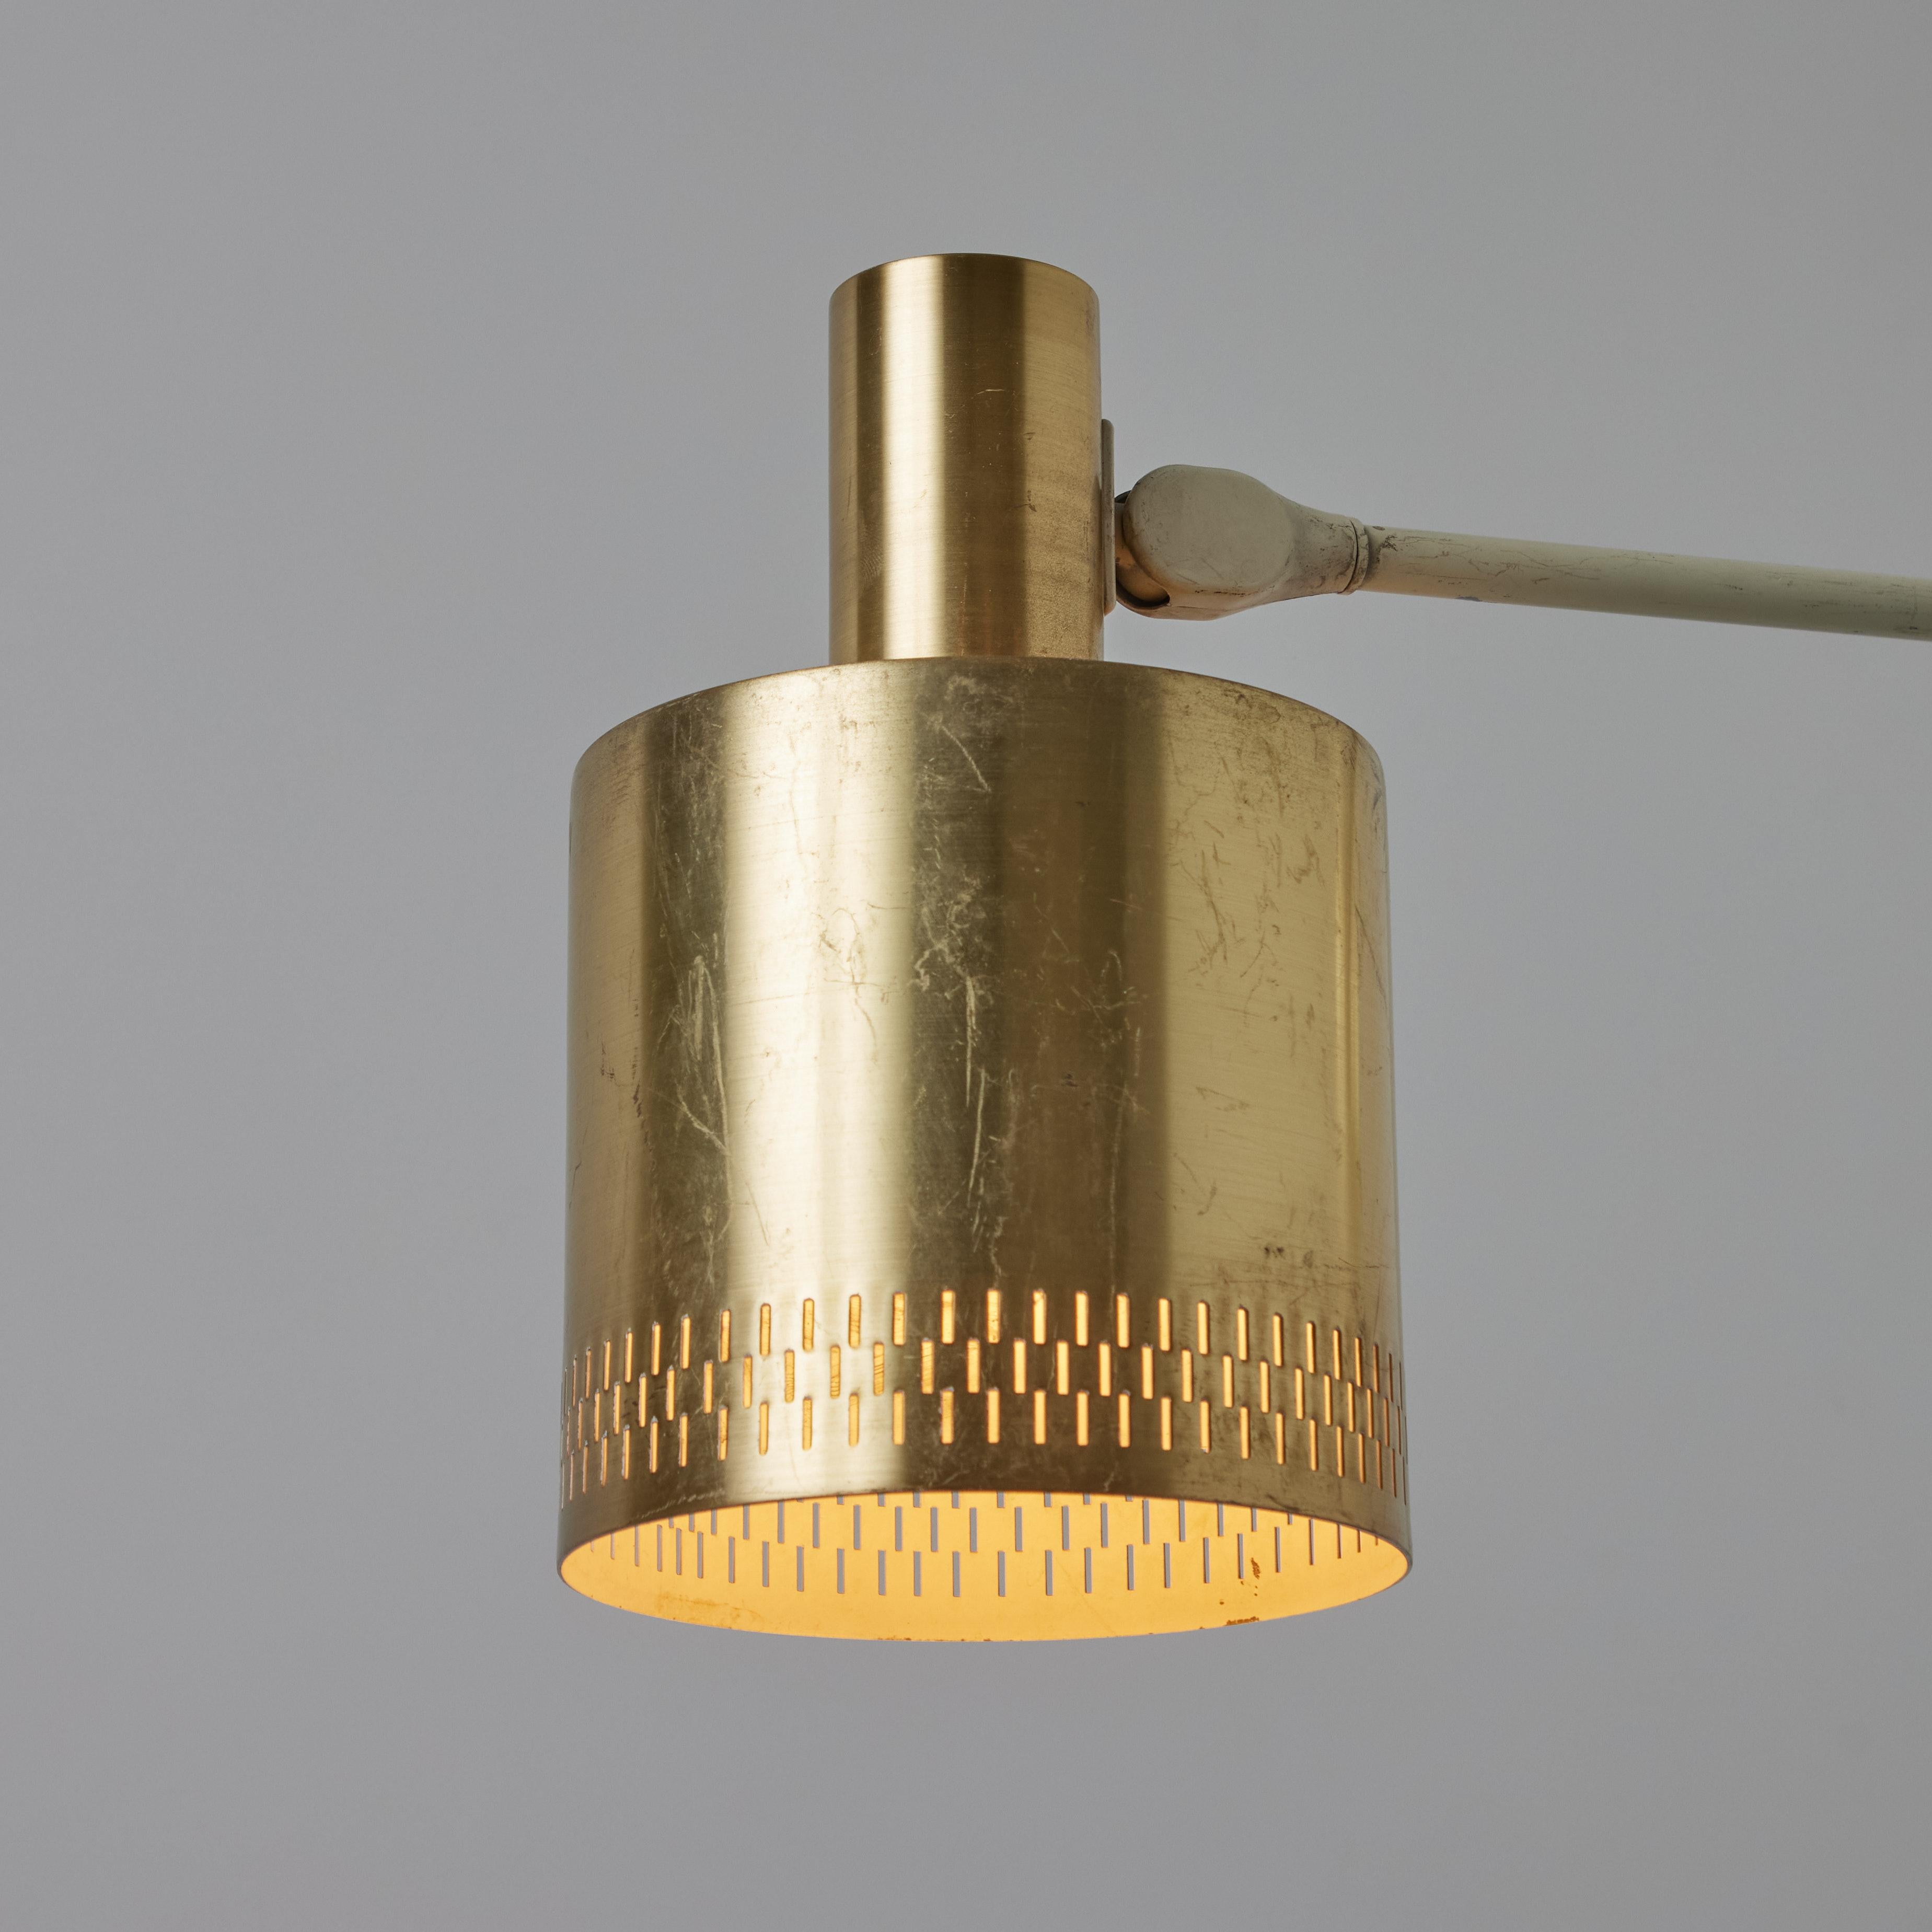 Zwei große Wandlampen aus perforiertem Messing von Jo Hammerborg aus den 1950er Jahren für Fog & Mørup. Ein minimalistischer dänischer Designklassiker der Moderne aus Messing und weiß lackiertem Metall. Ein raffiniertes Paar Wandlampen, das ganz und